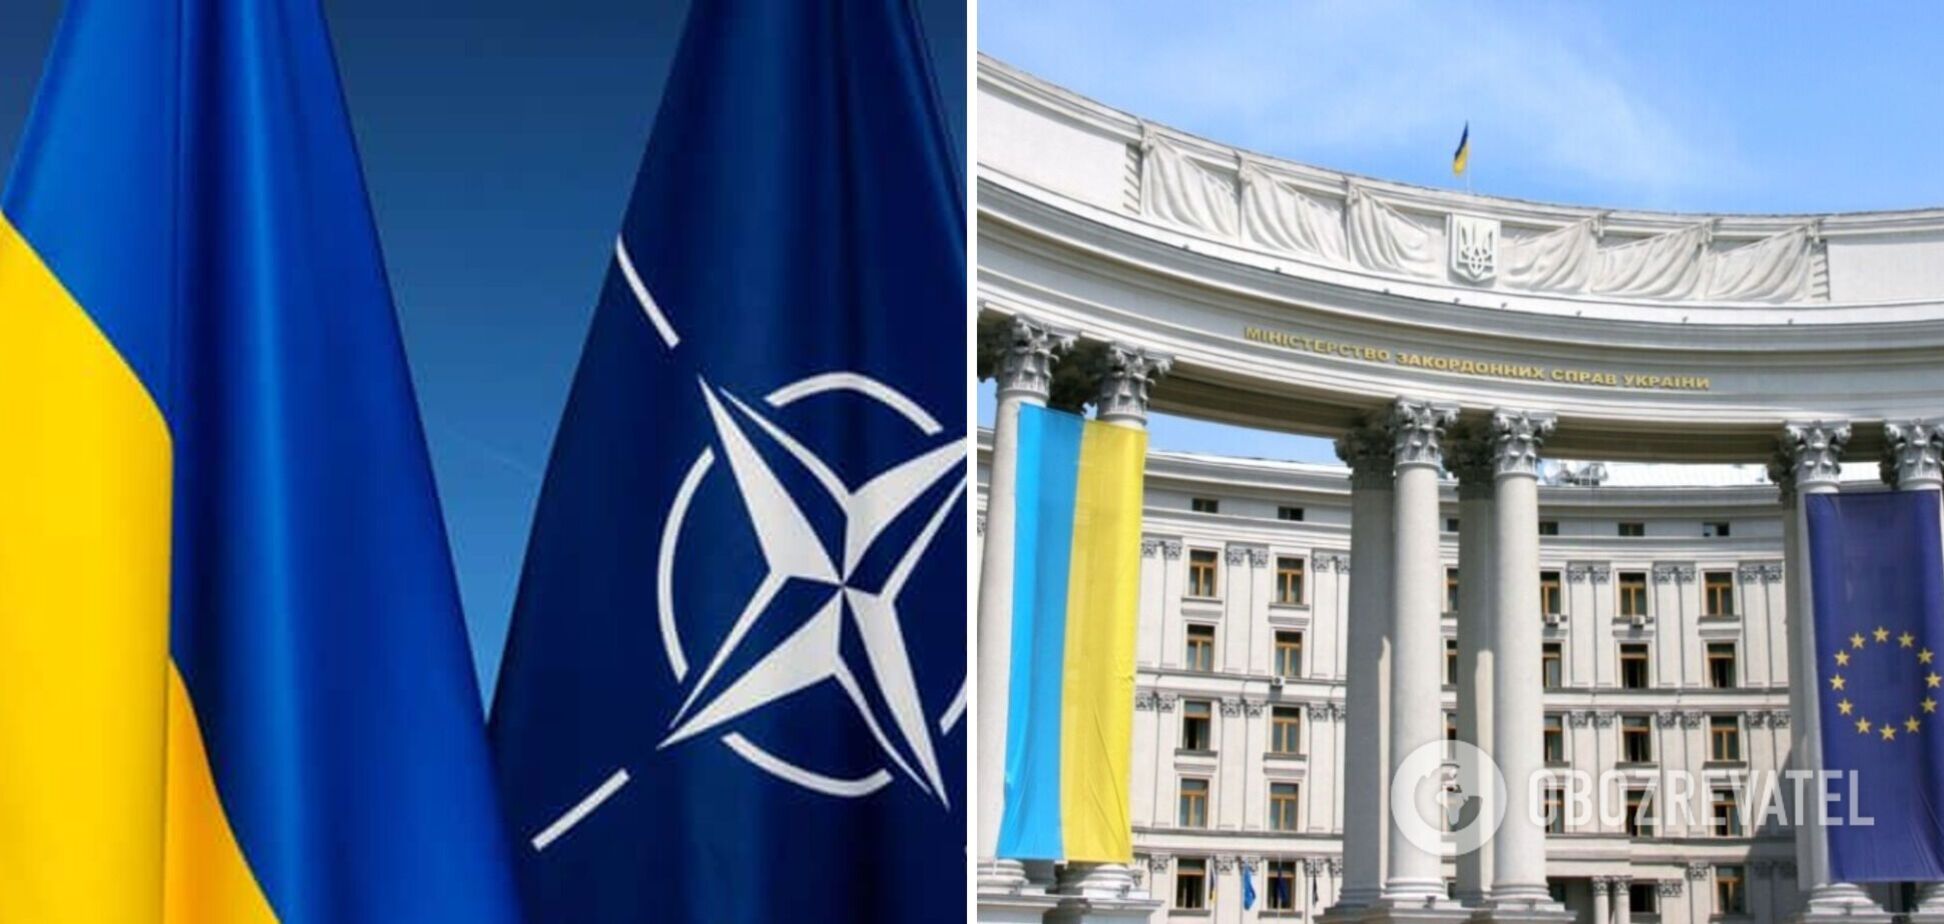 Чиновник НАТО допустил членство Украины в обмен на территориальные уступки России: в МИД отреагировали